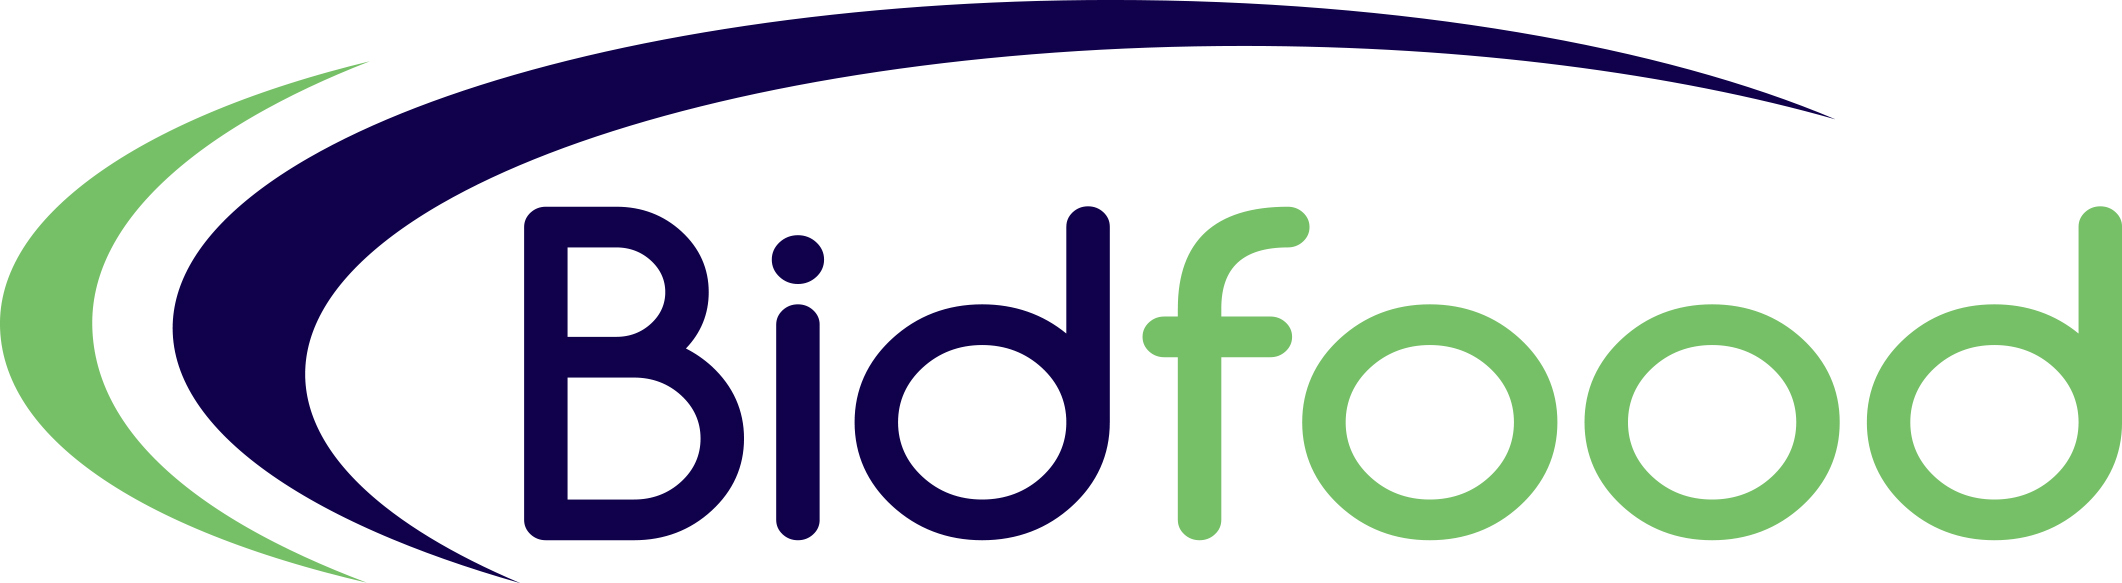 Bidfood logo